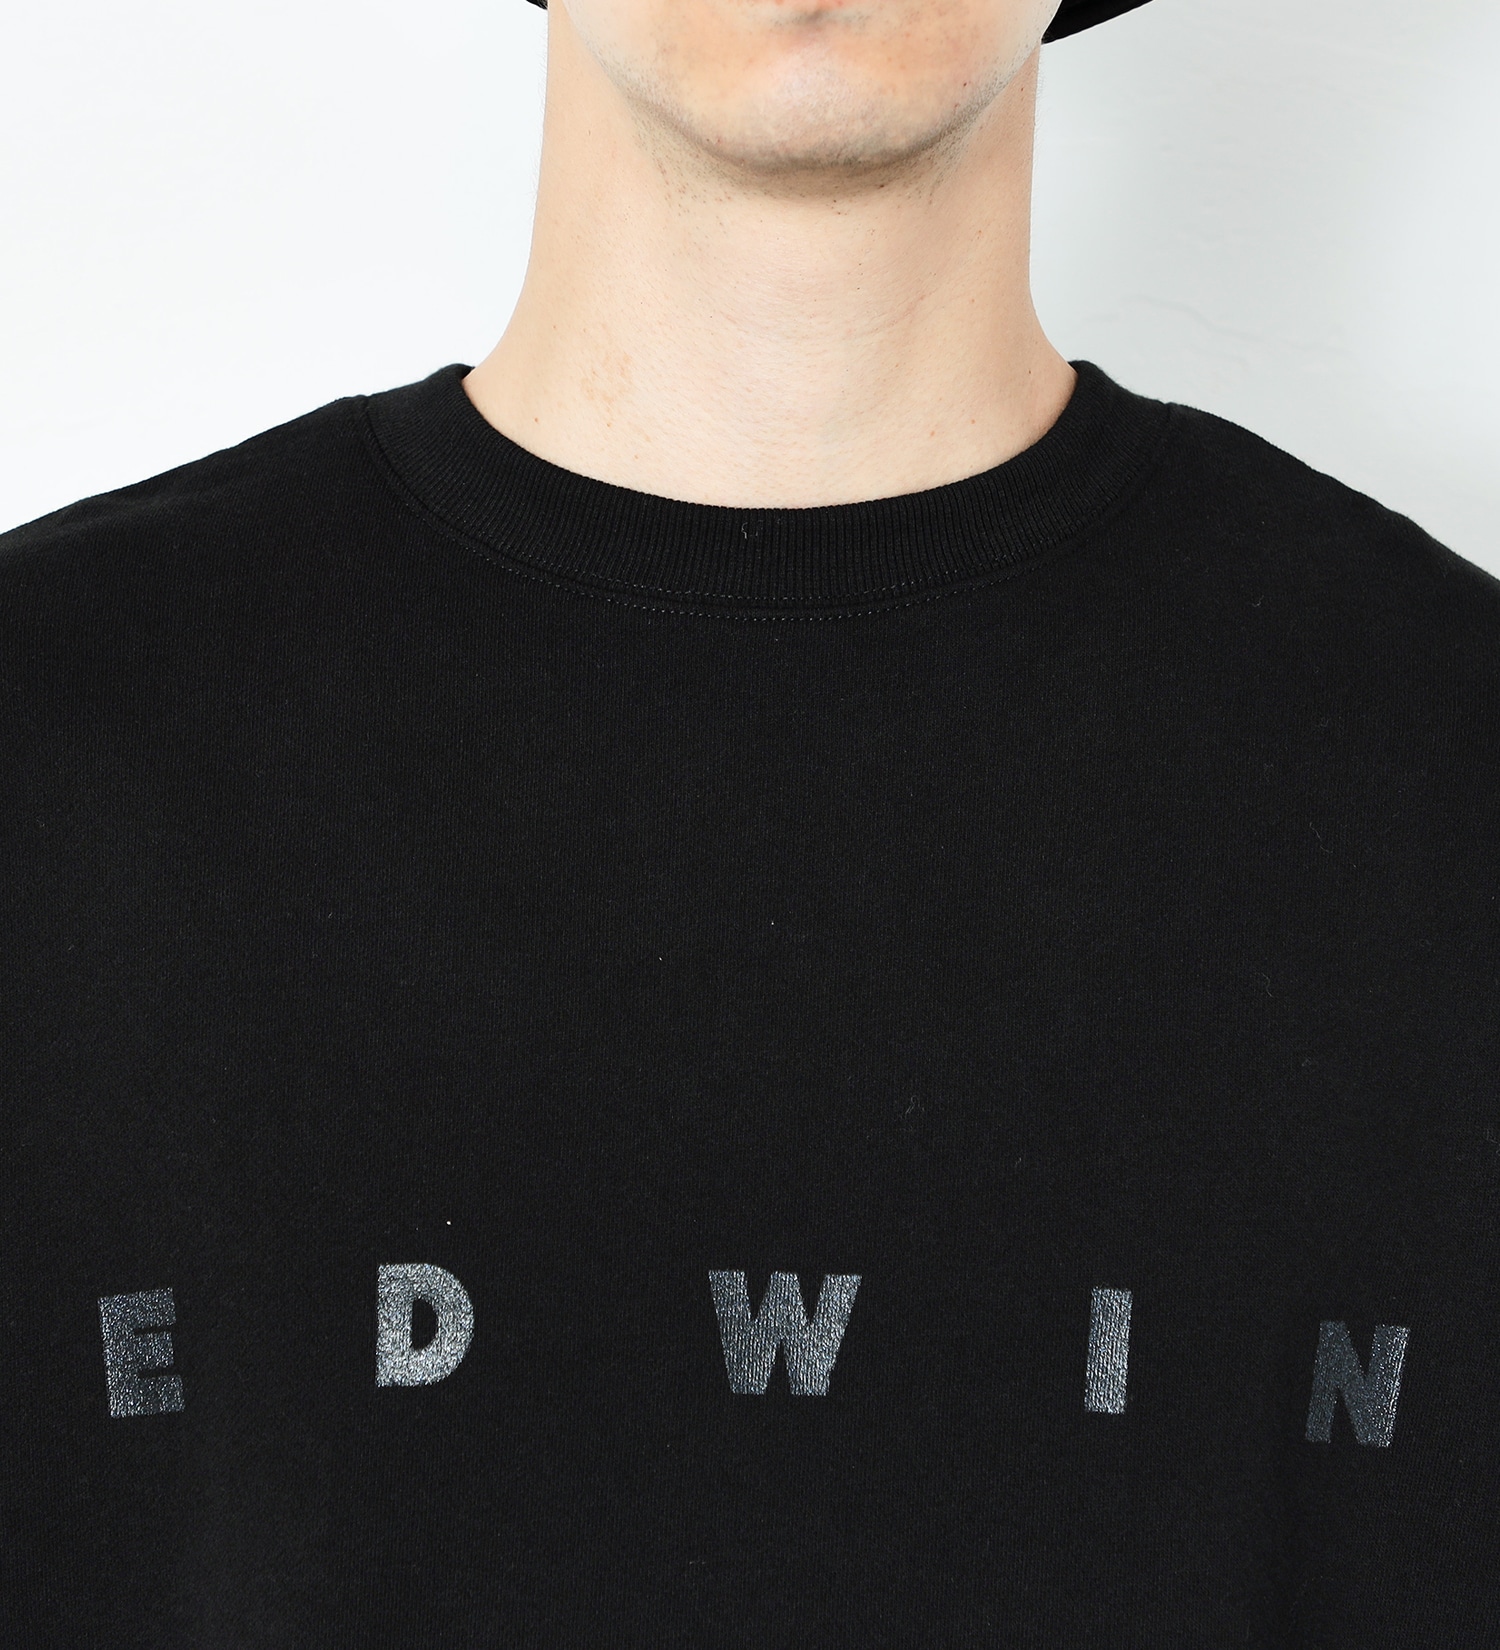 EDWIN(エドウイン)の【試着対象】A KIND OF BLACK BIG FIT クルーネック スウェット|トップス/Tシャツ/カットソー/メンズ|ブラック